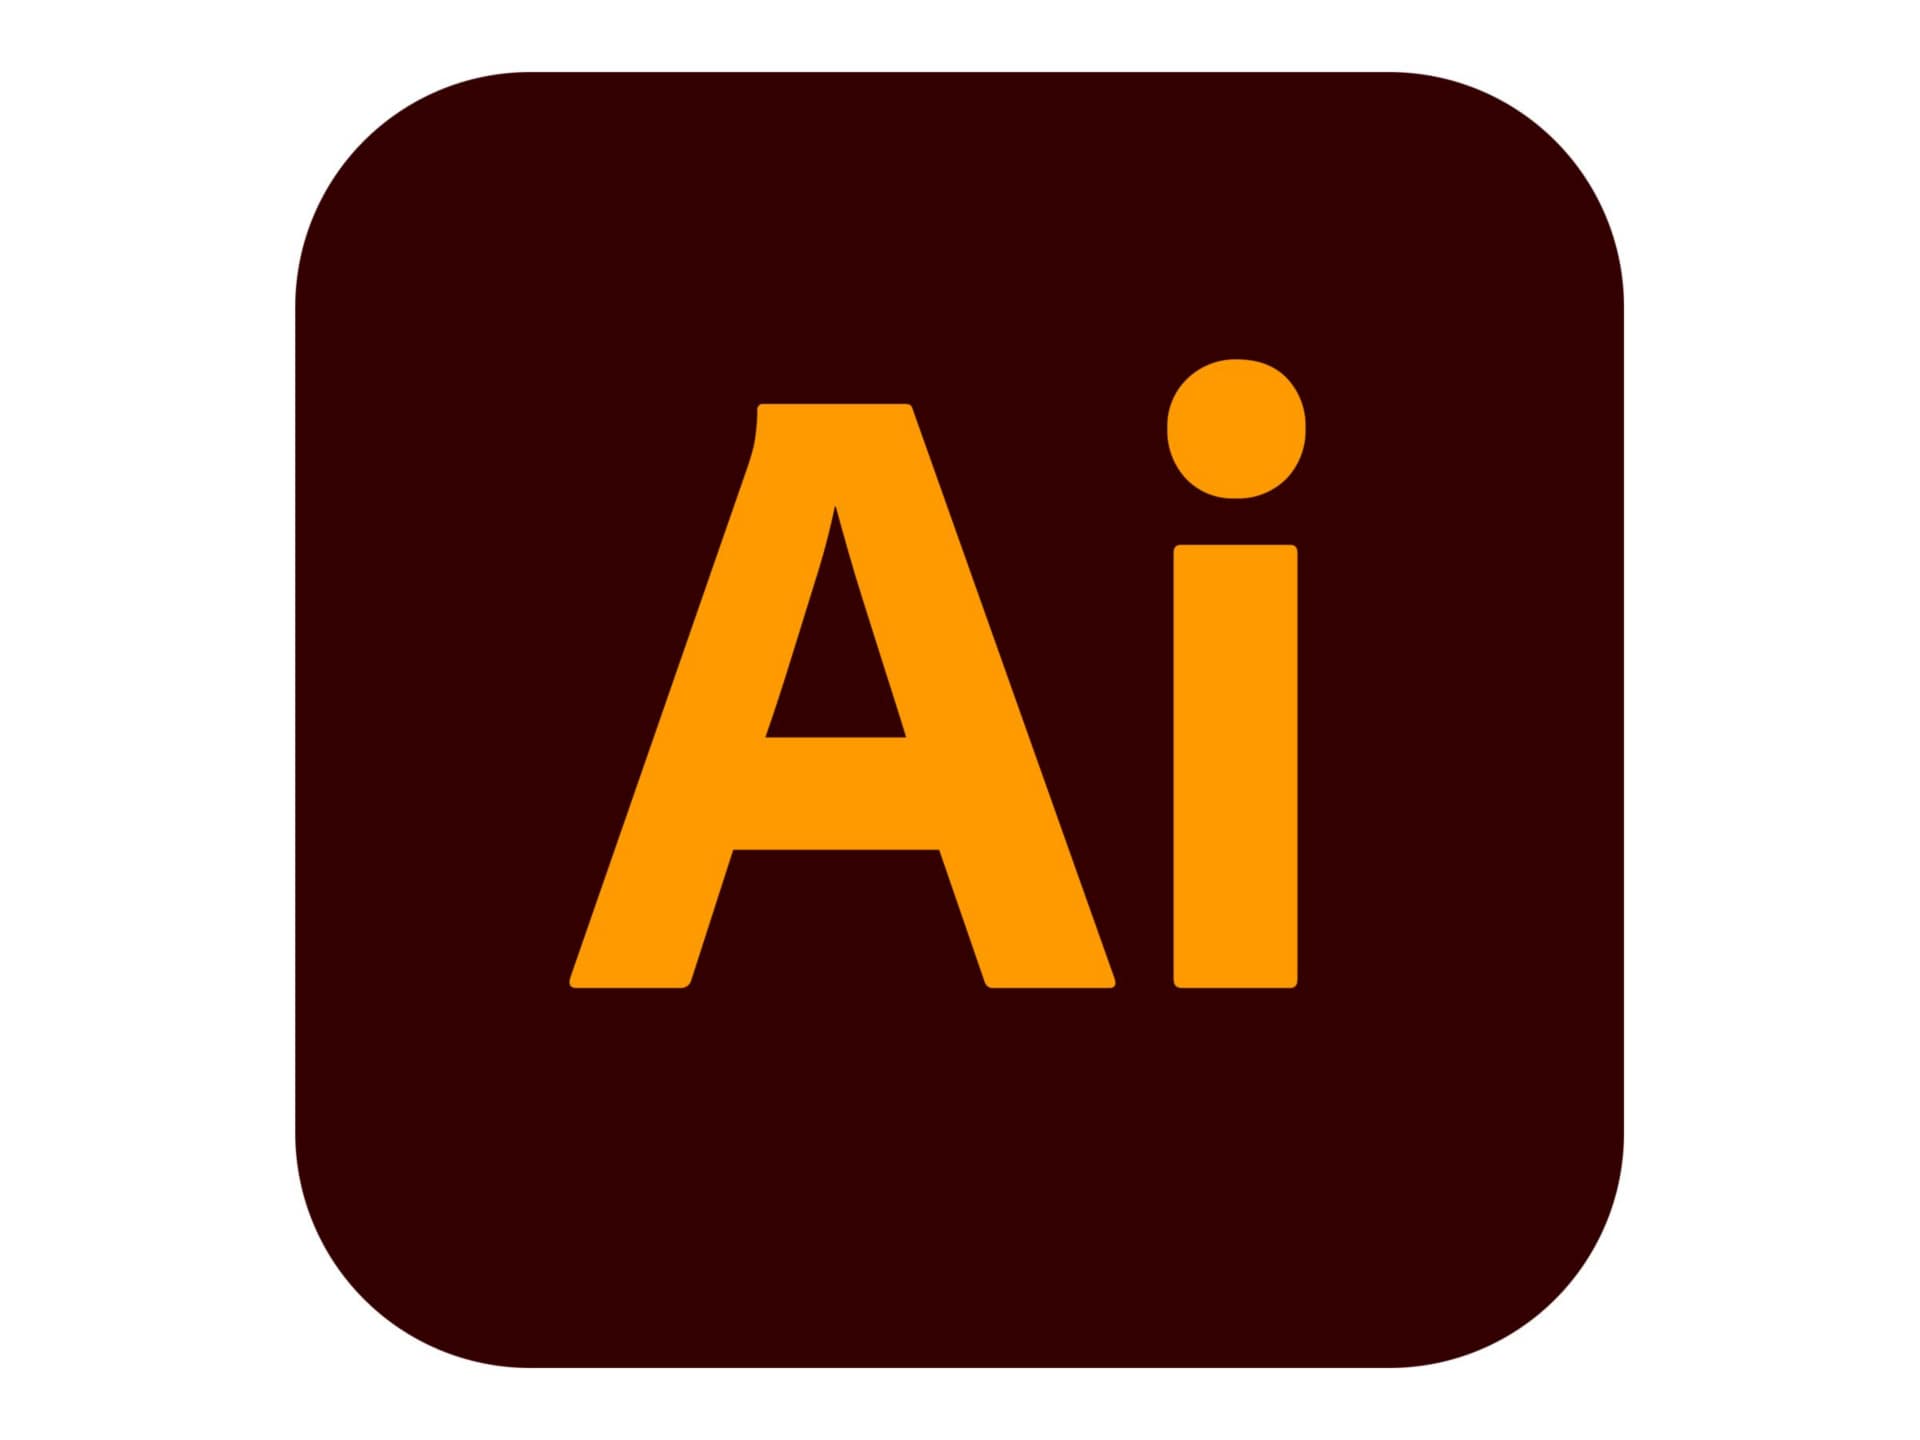 Adobe Illustrator CC for Enterprise - Subscription New (1 month) - 1 named user